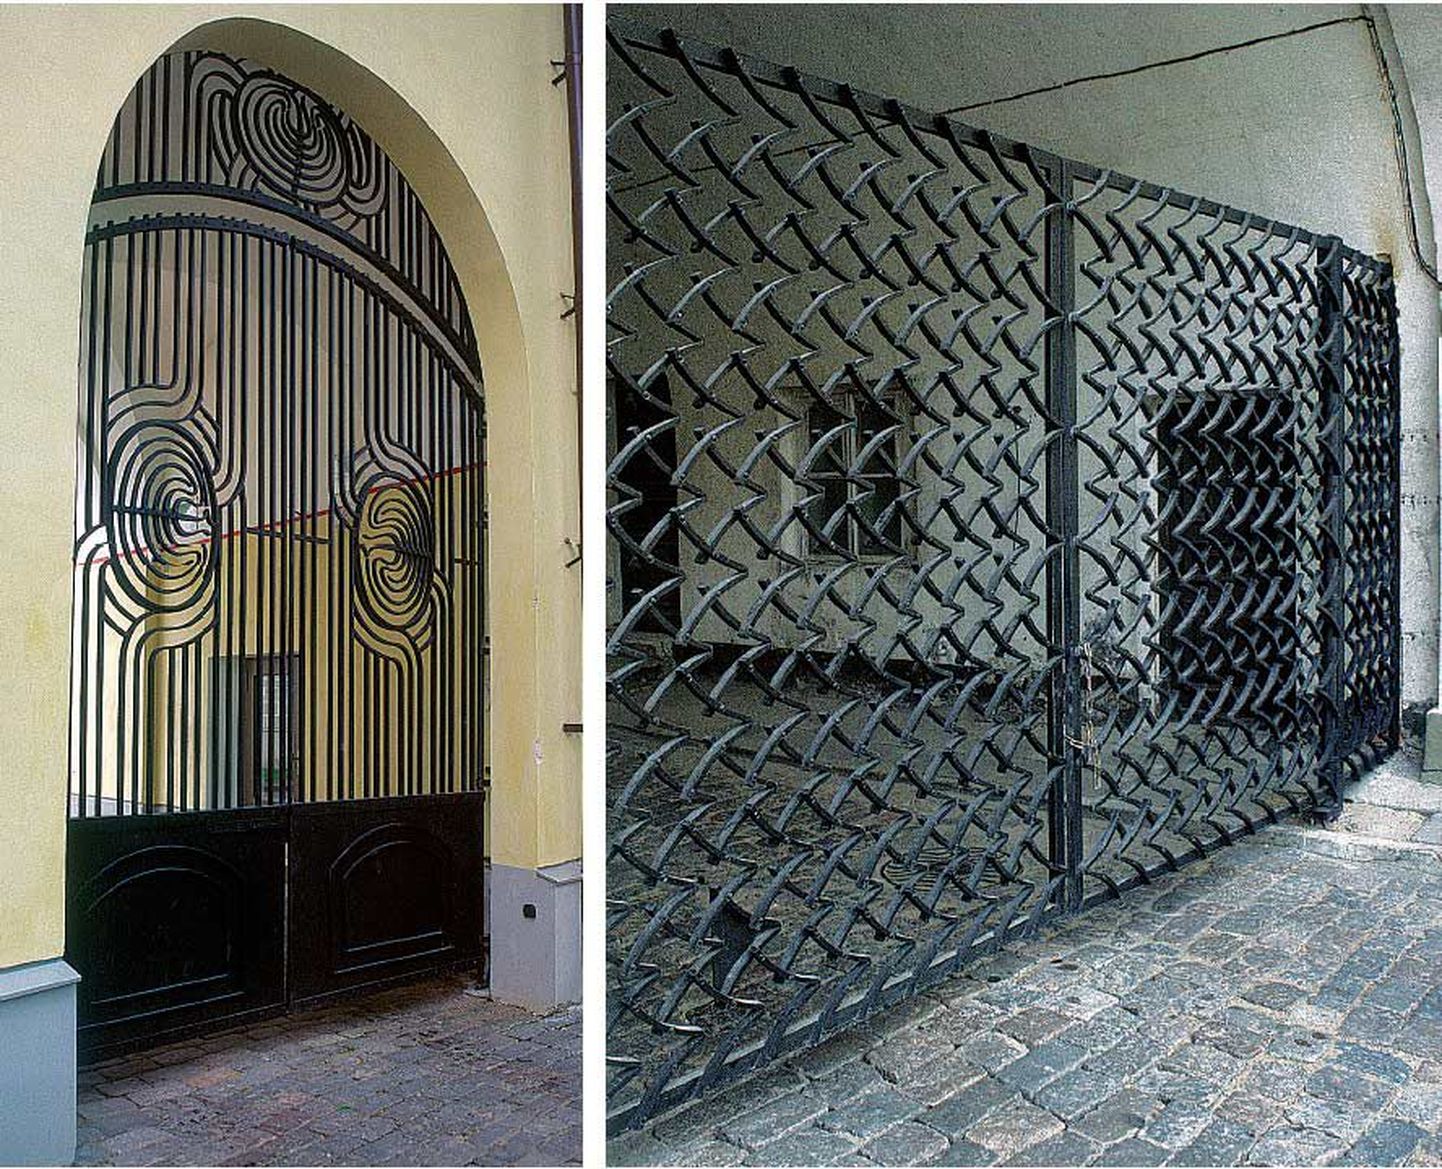 Heigo Jelle väravad kaunistavad nii valitsuse residentsi Stenbocki majas kui ka Toompea lossi sisehoovi.